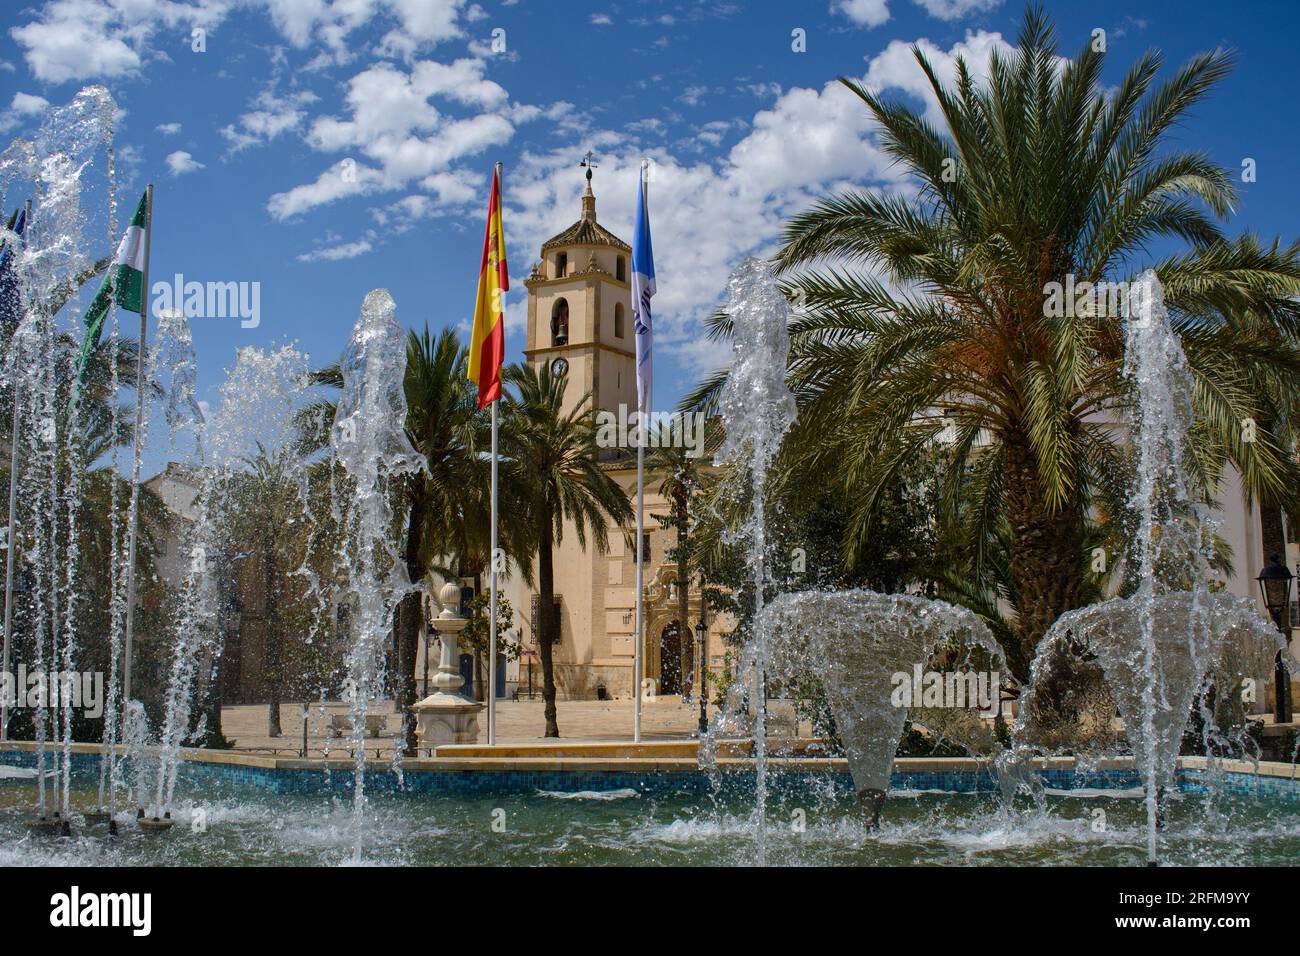 Albox, Almeria, Spain. The early 18c.parish church (Iglesia de Santa María)  seen through fountains playing in the Plaza de Pueblo. Stock Photo